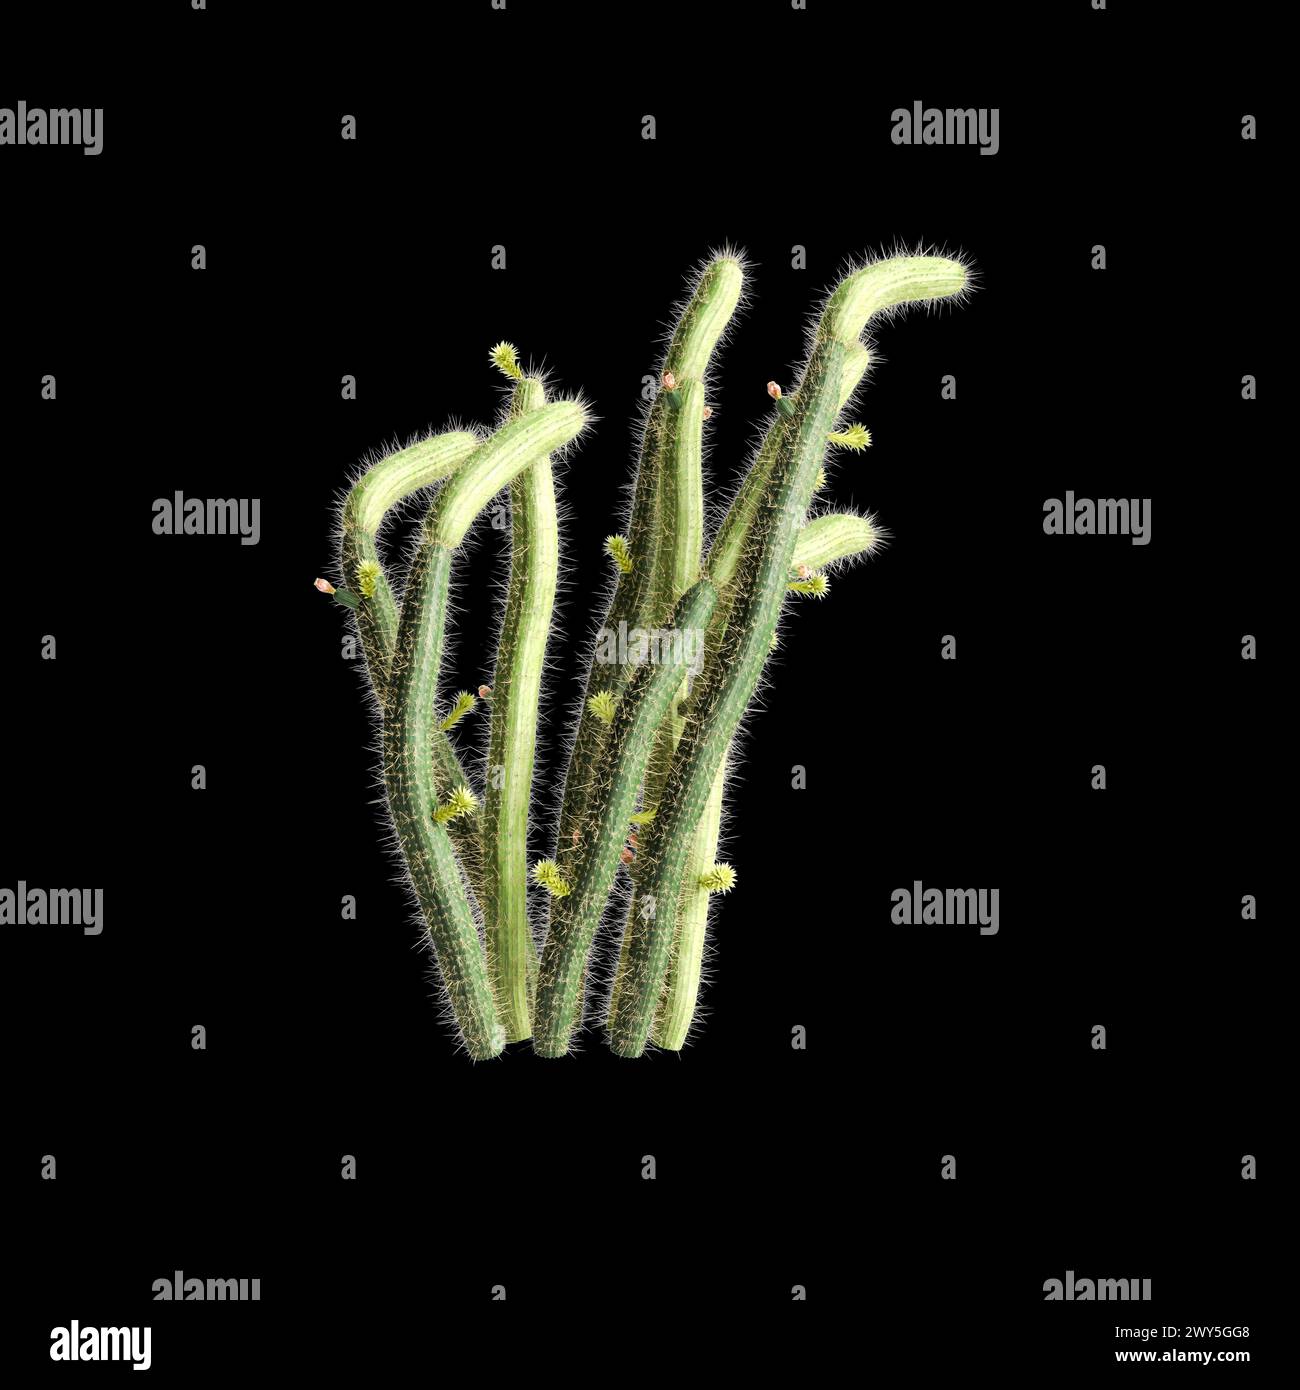 3d illustration of Bergerocactus emoryi bush isolated on black background Stock Photo